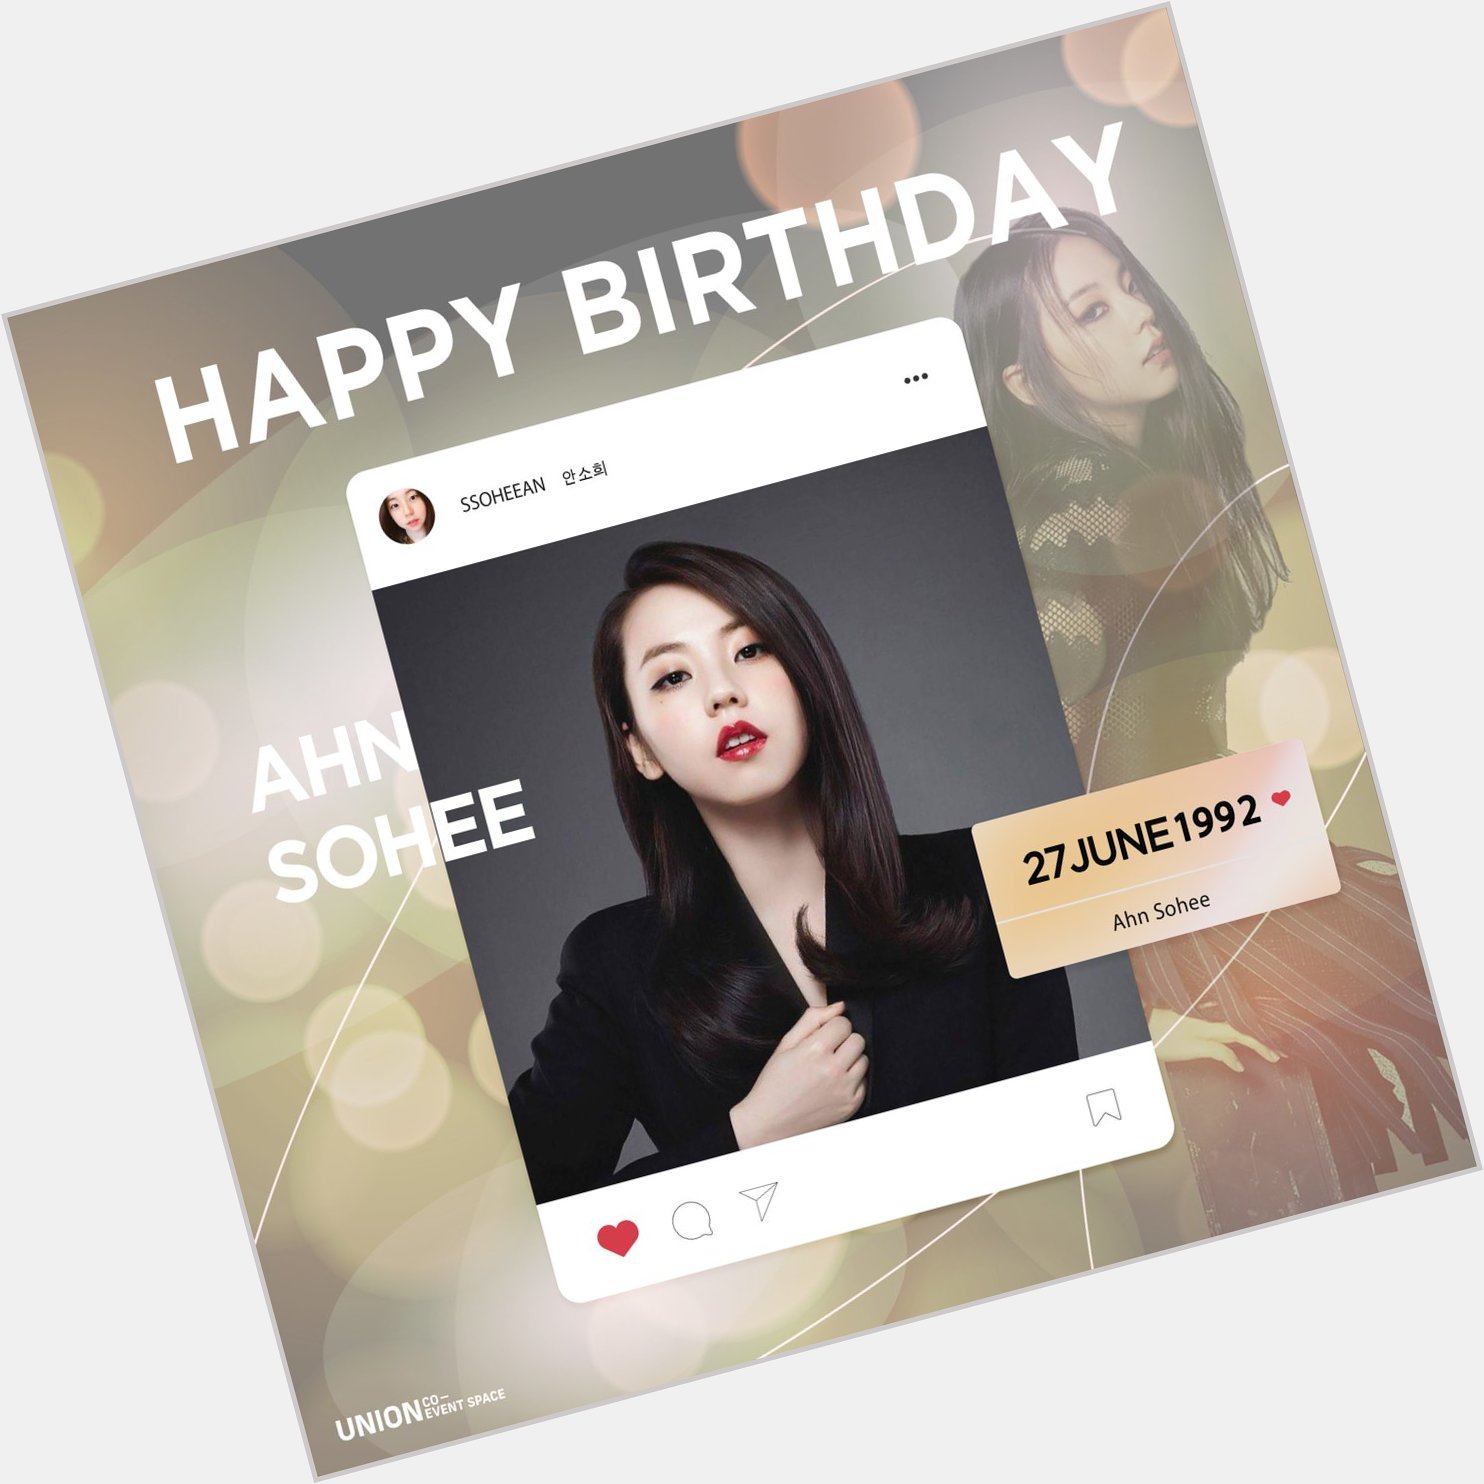  Happy Birthday Ahn Sohee      